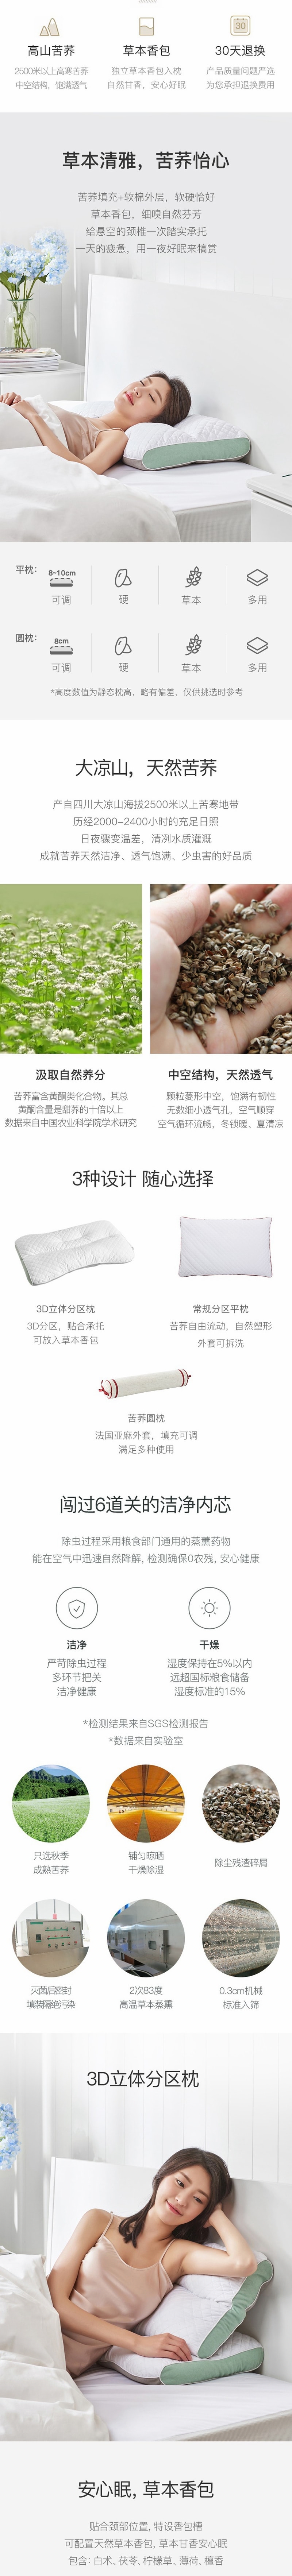 网易严选升级款怡眠高山苦荞枕 可调节可组合 3D立体分区枕(不含香包)